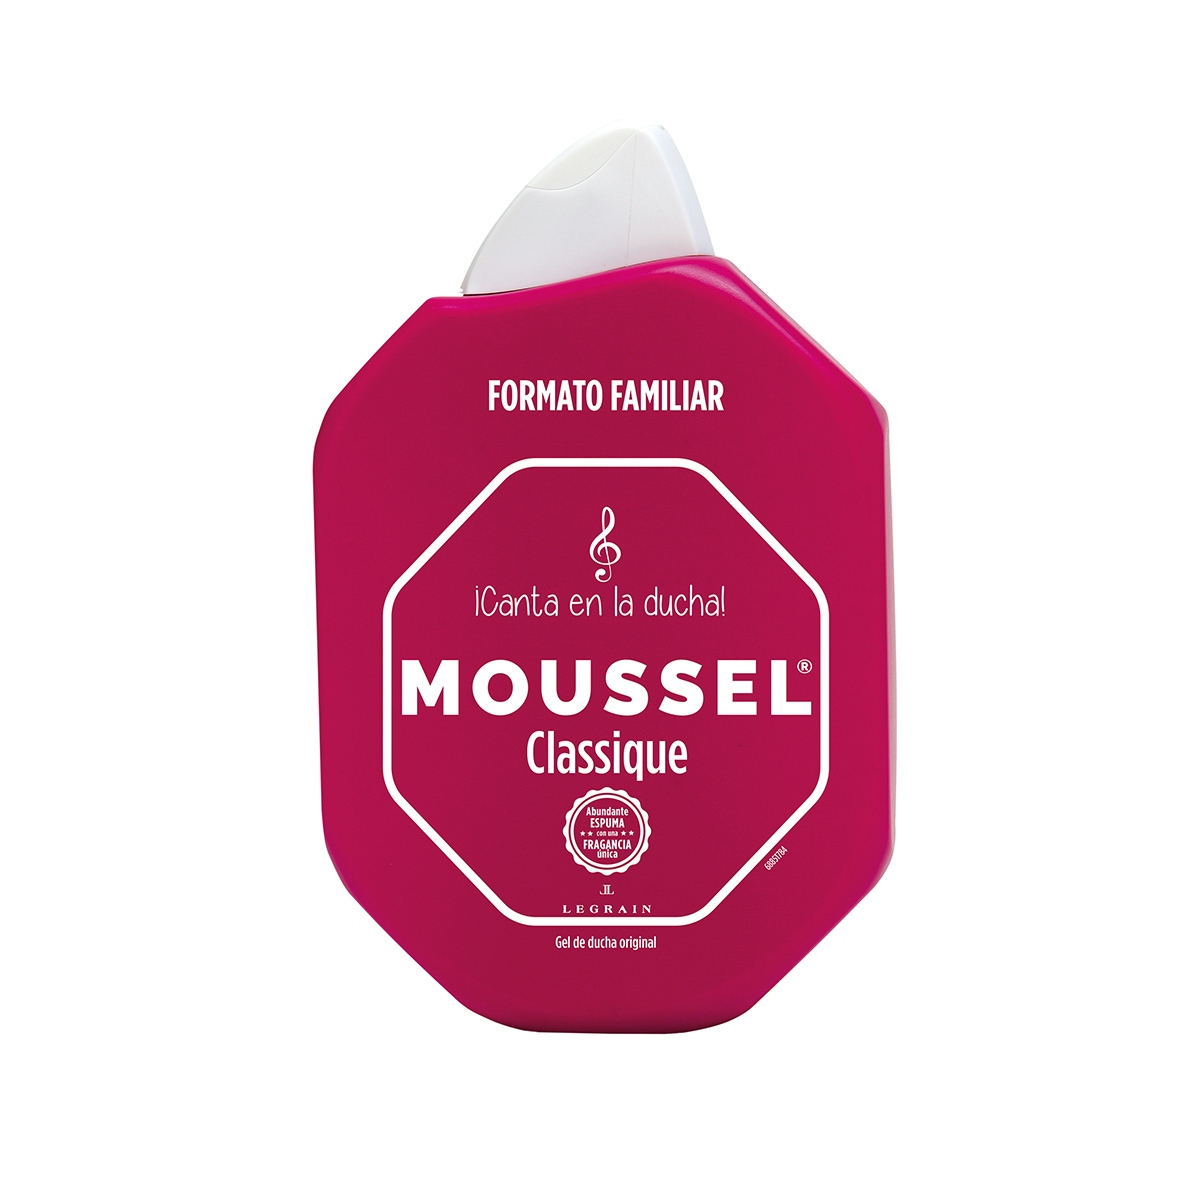 Gel de ducha MOUSSEL clásico formato familiar bote 900 ml